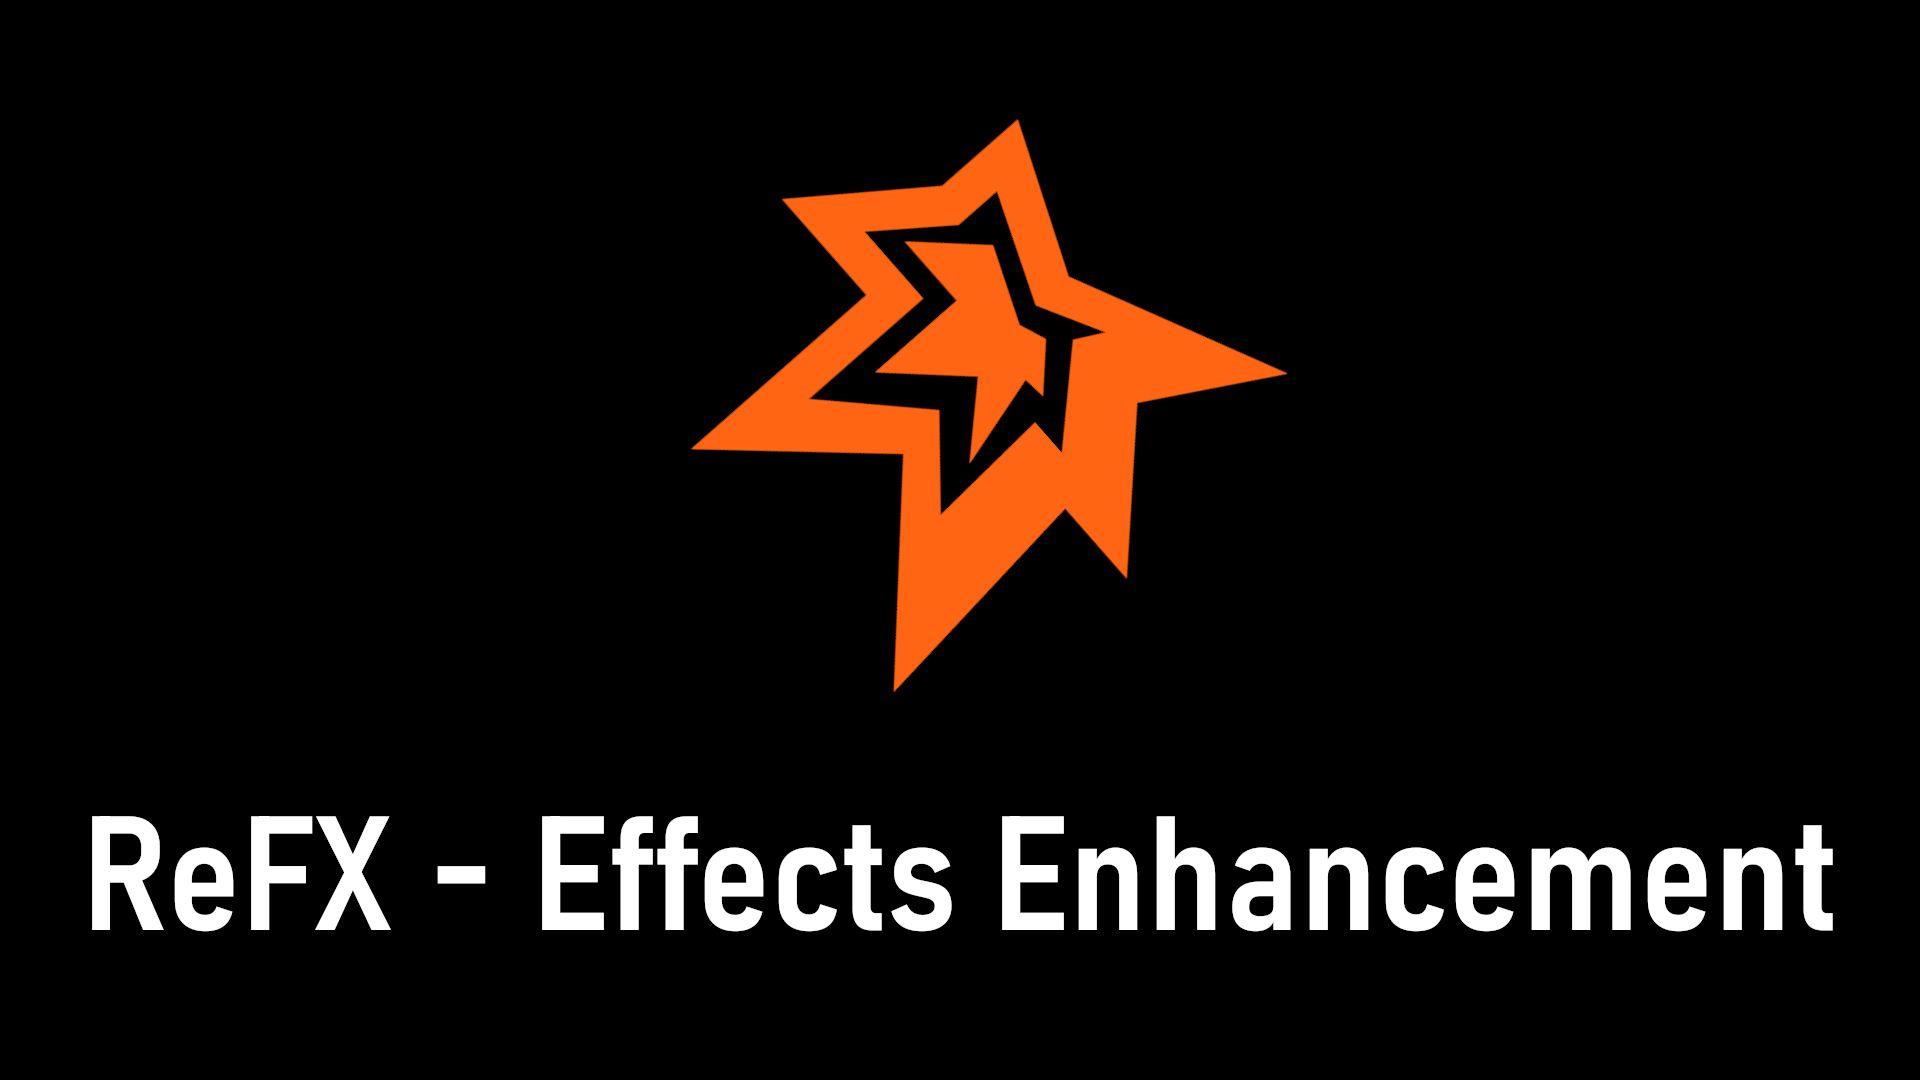 ReFX - Effects Enhancement